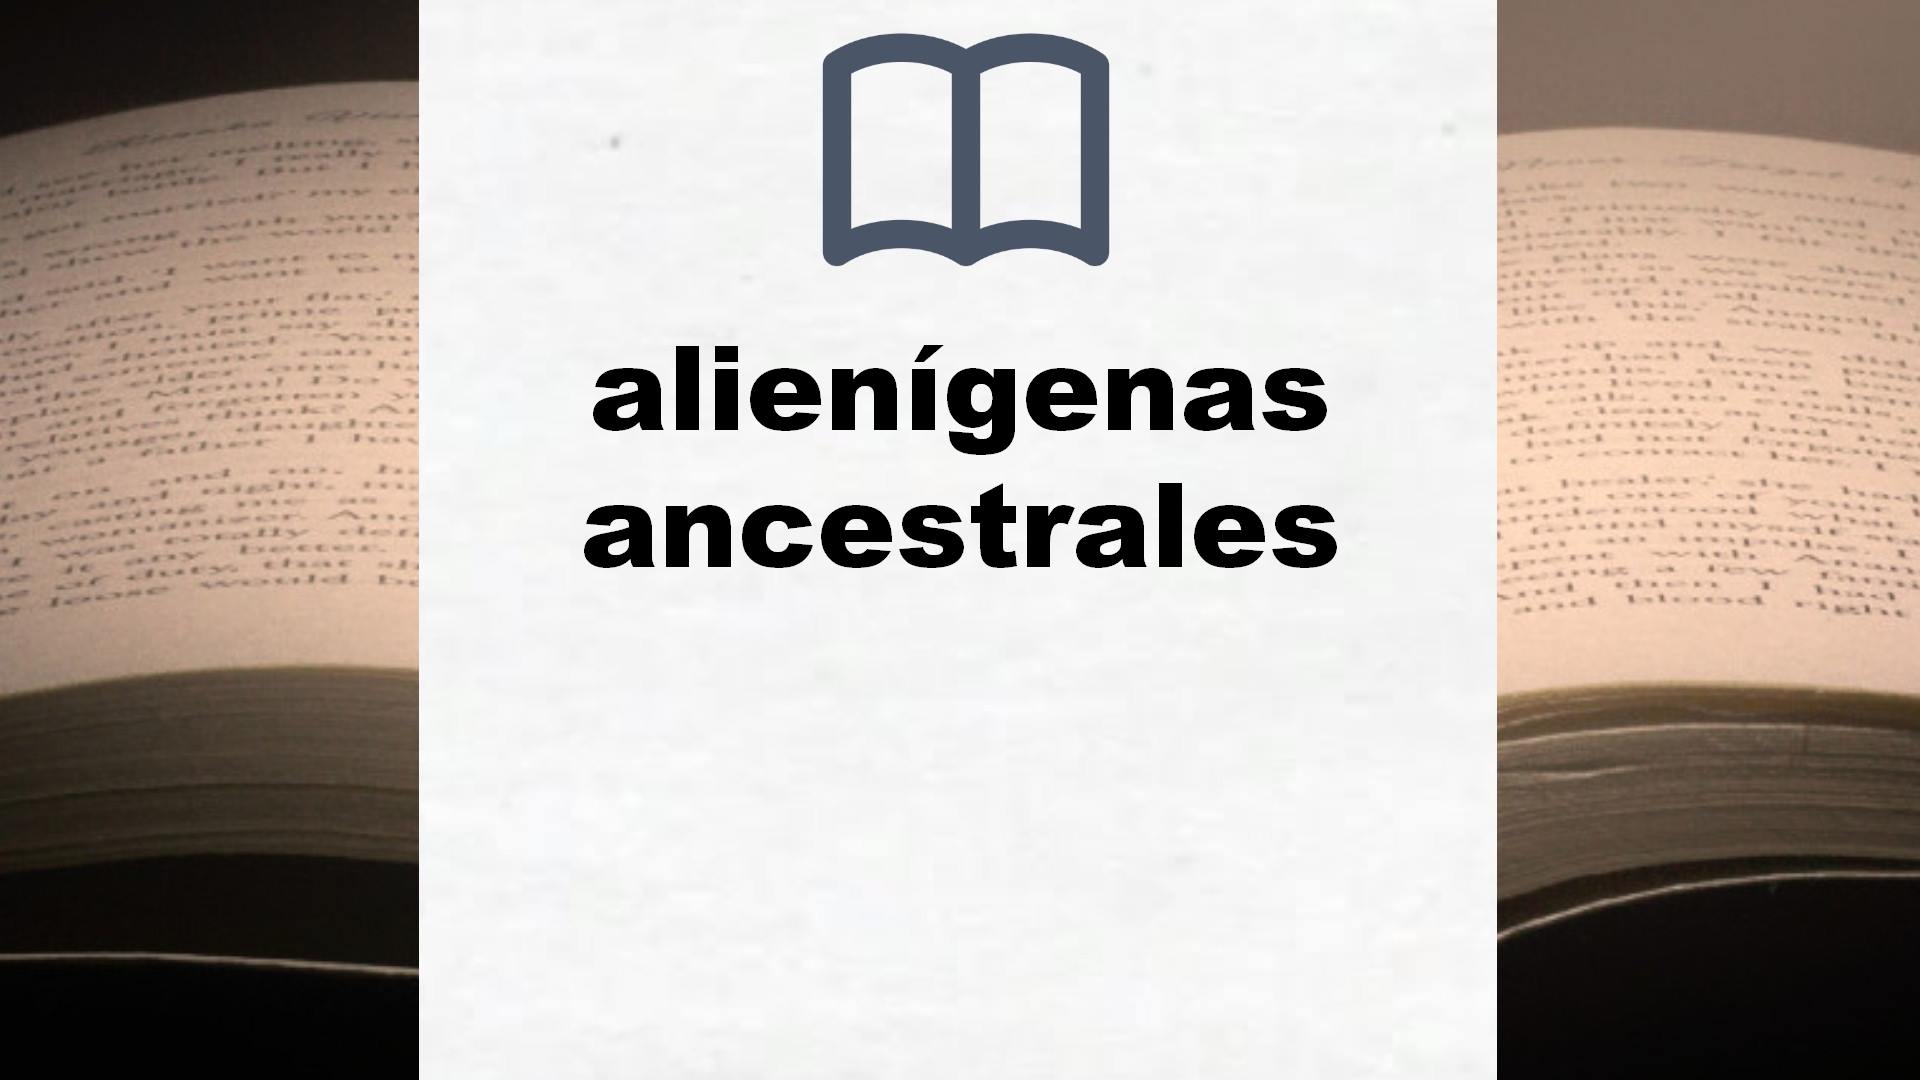 Libros sobre alienígenas ancestrales